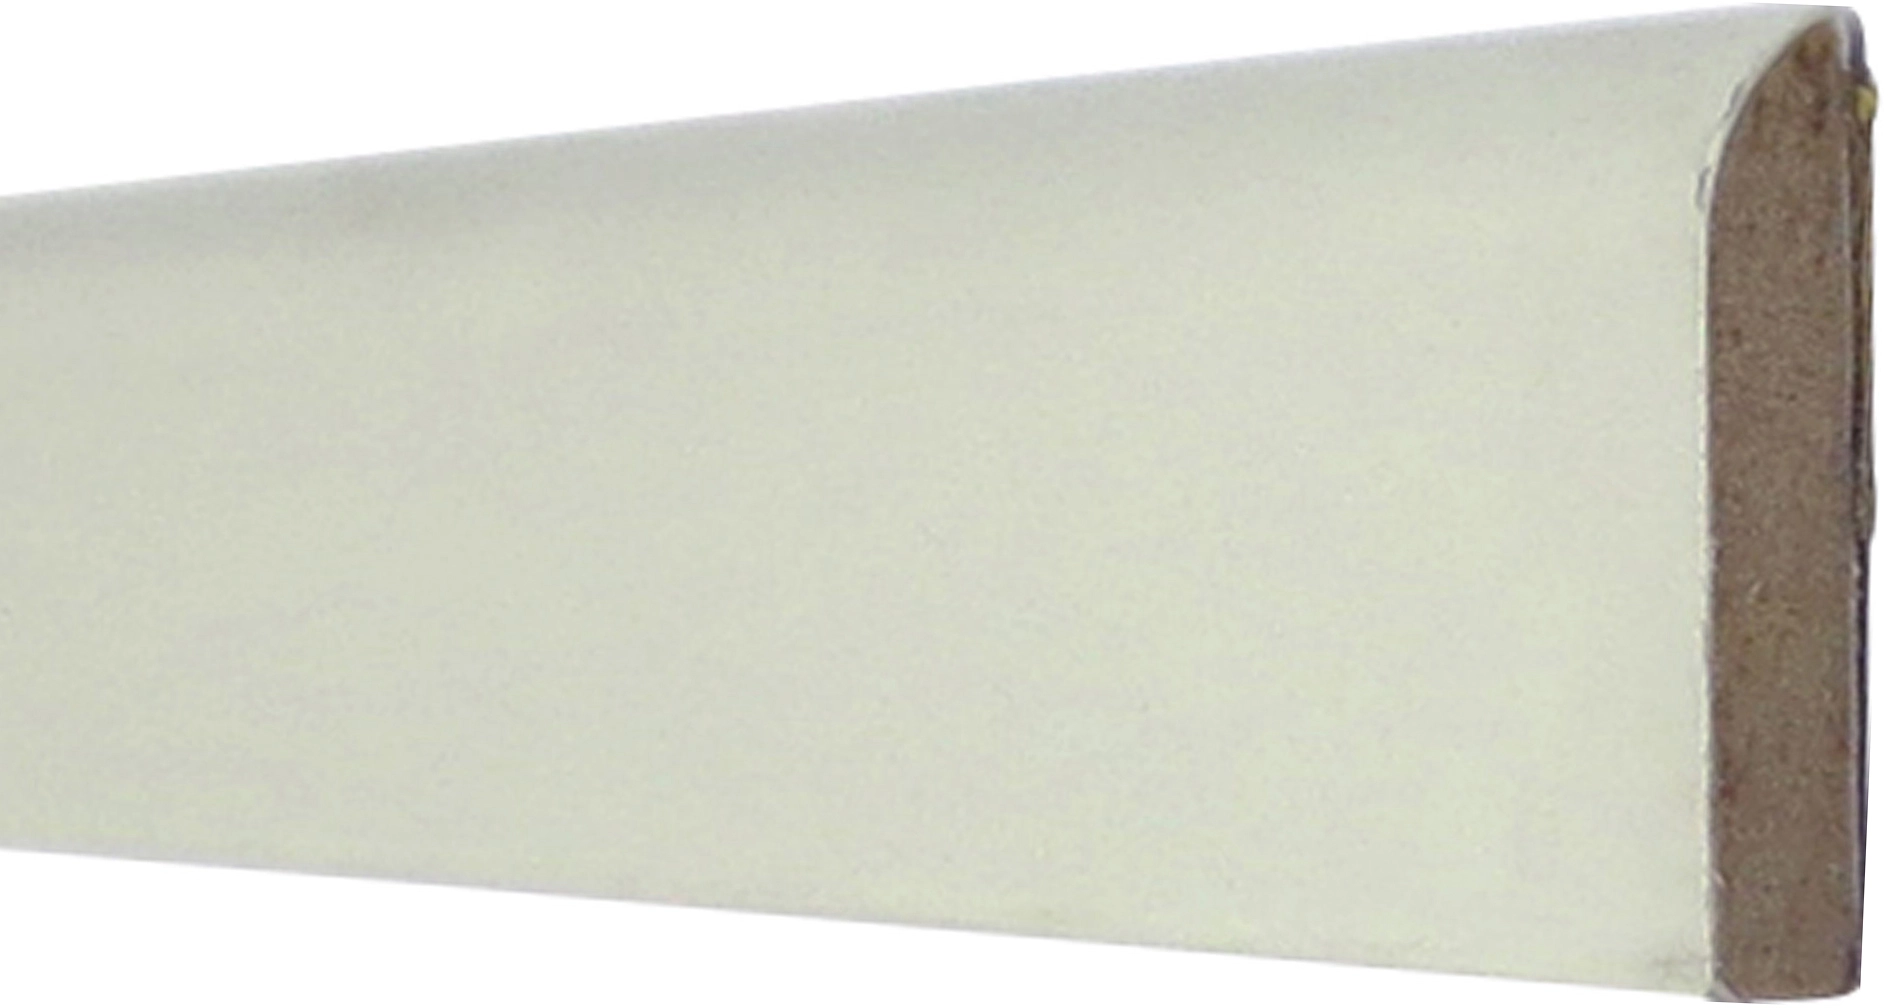 Flachleisten PVC weiß 2,5 mm stark Oberseite glatt Unterseite